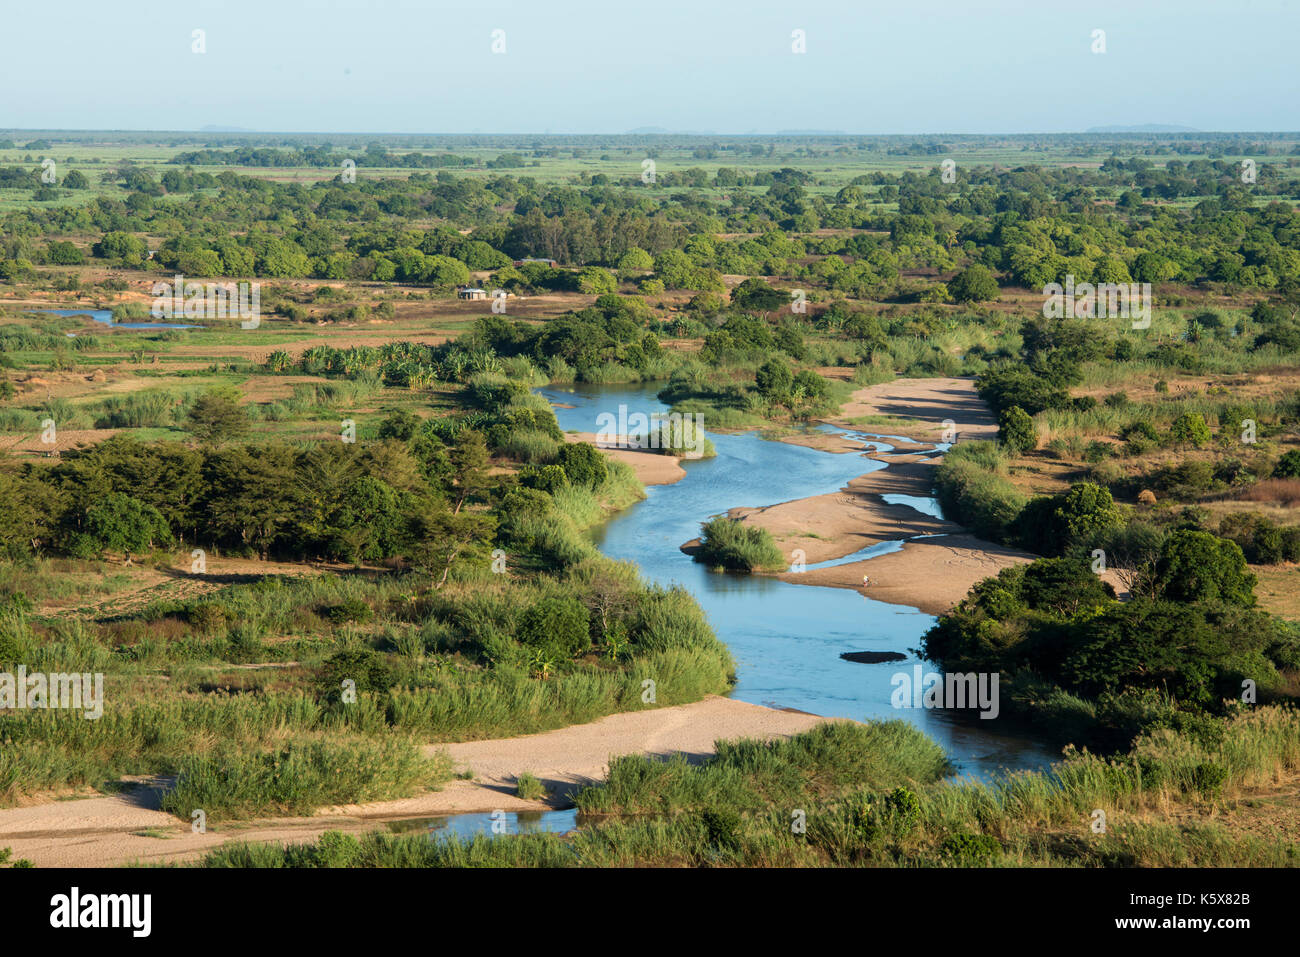 the Mahavavy River, Ankarana, Madagascar Stock Photo